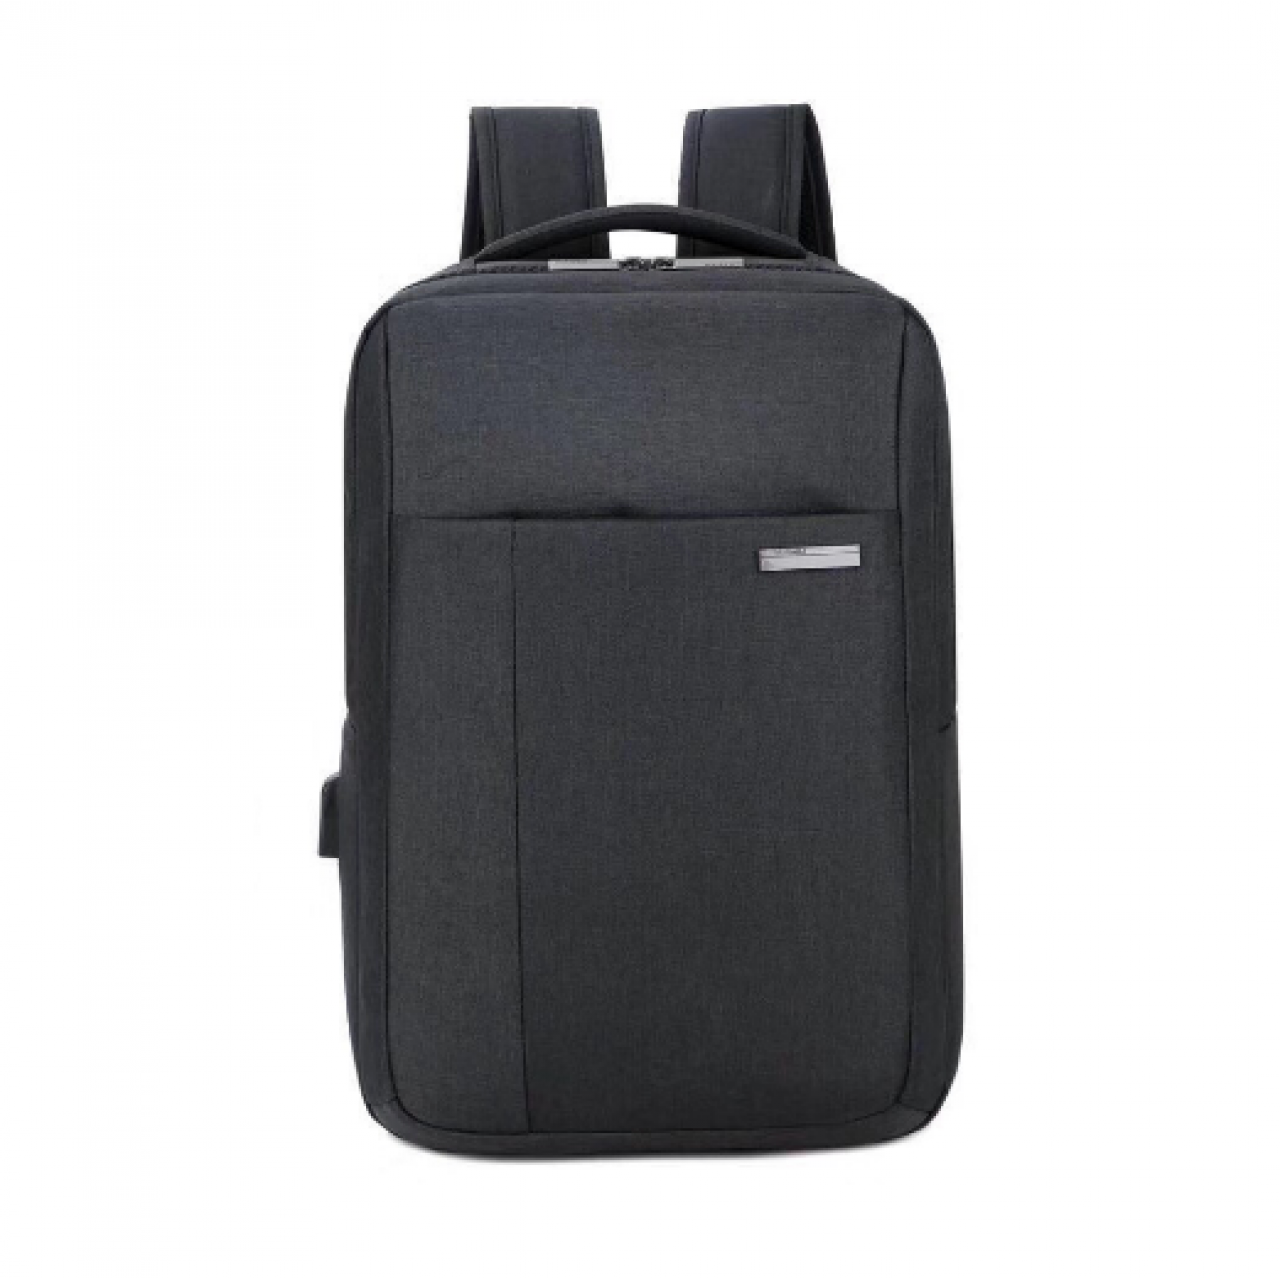 Τσάντα για Λάπτοπ έως 15,6   με έξοδο USB  - 4142 - Μαύρο ΟΕΜ